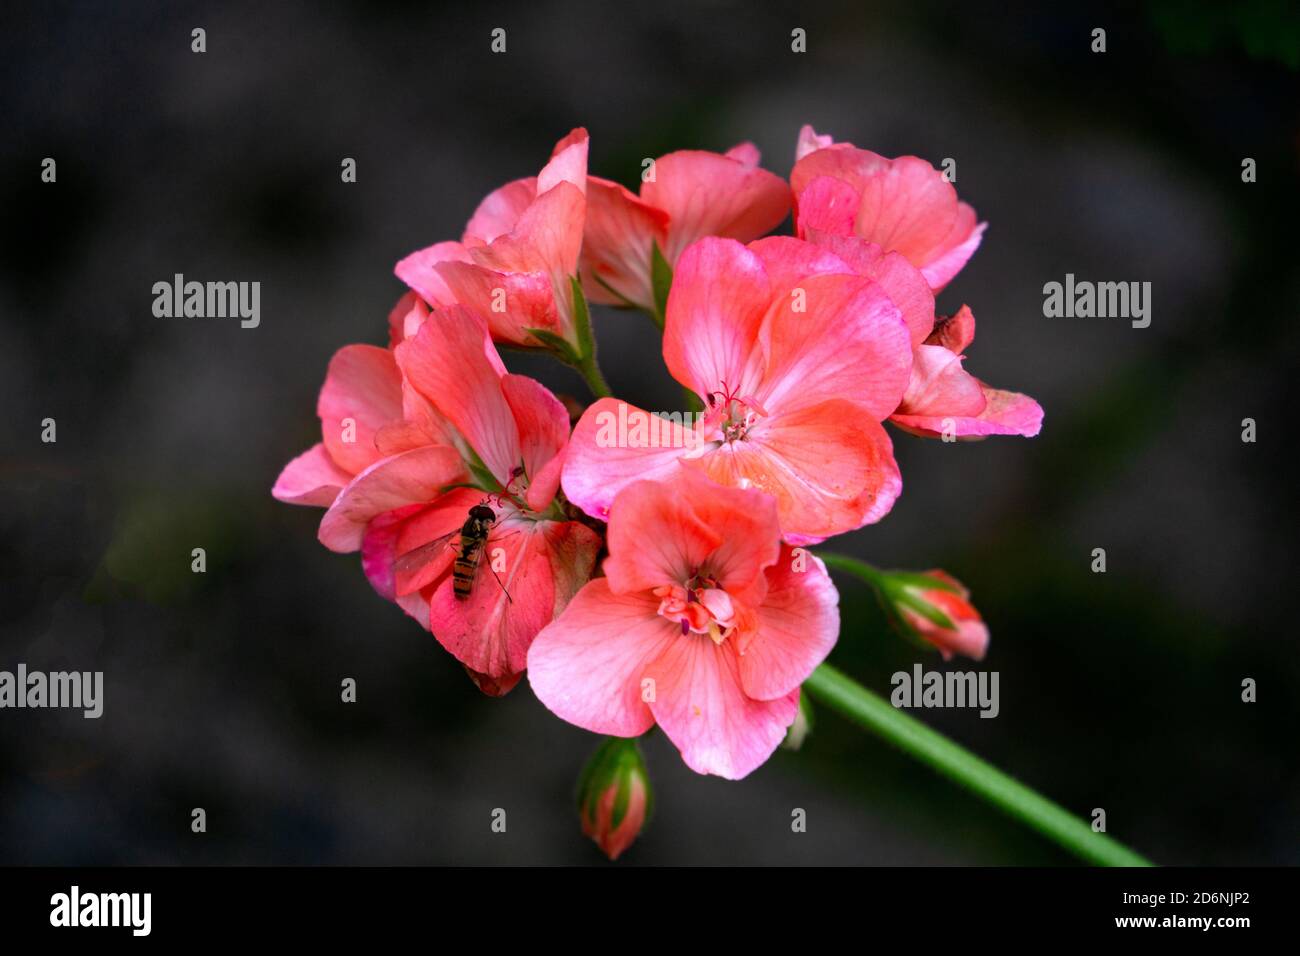 Rosa schöne Geranienblume auf dunklem Hintergrund. Stockfoto